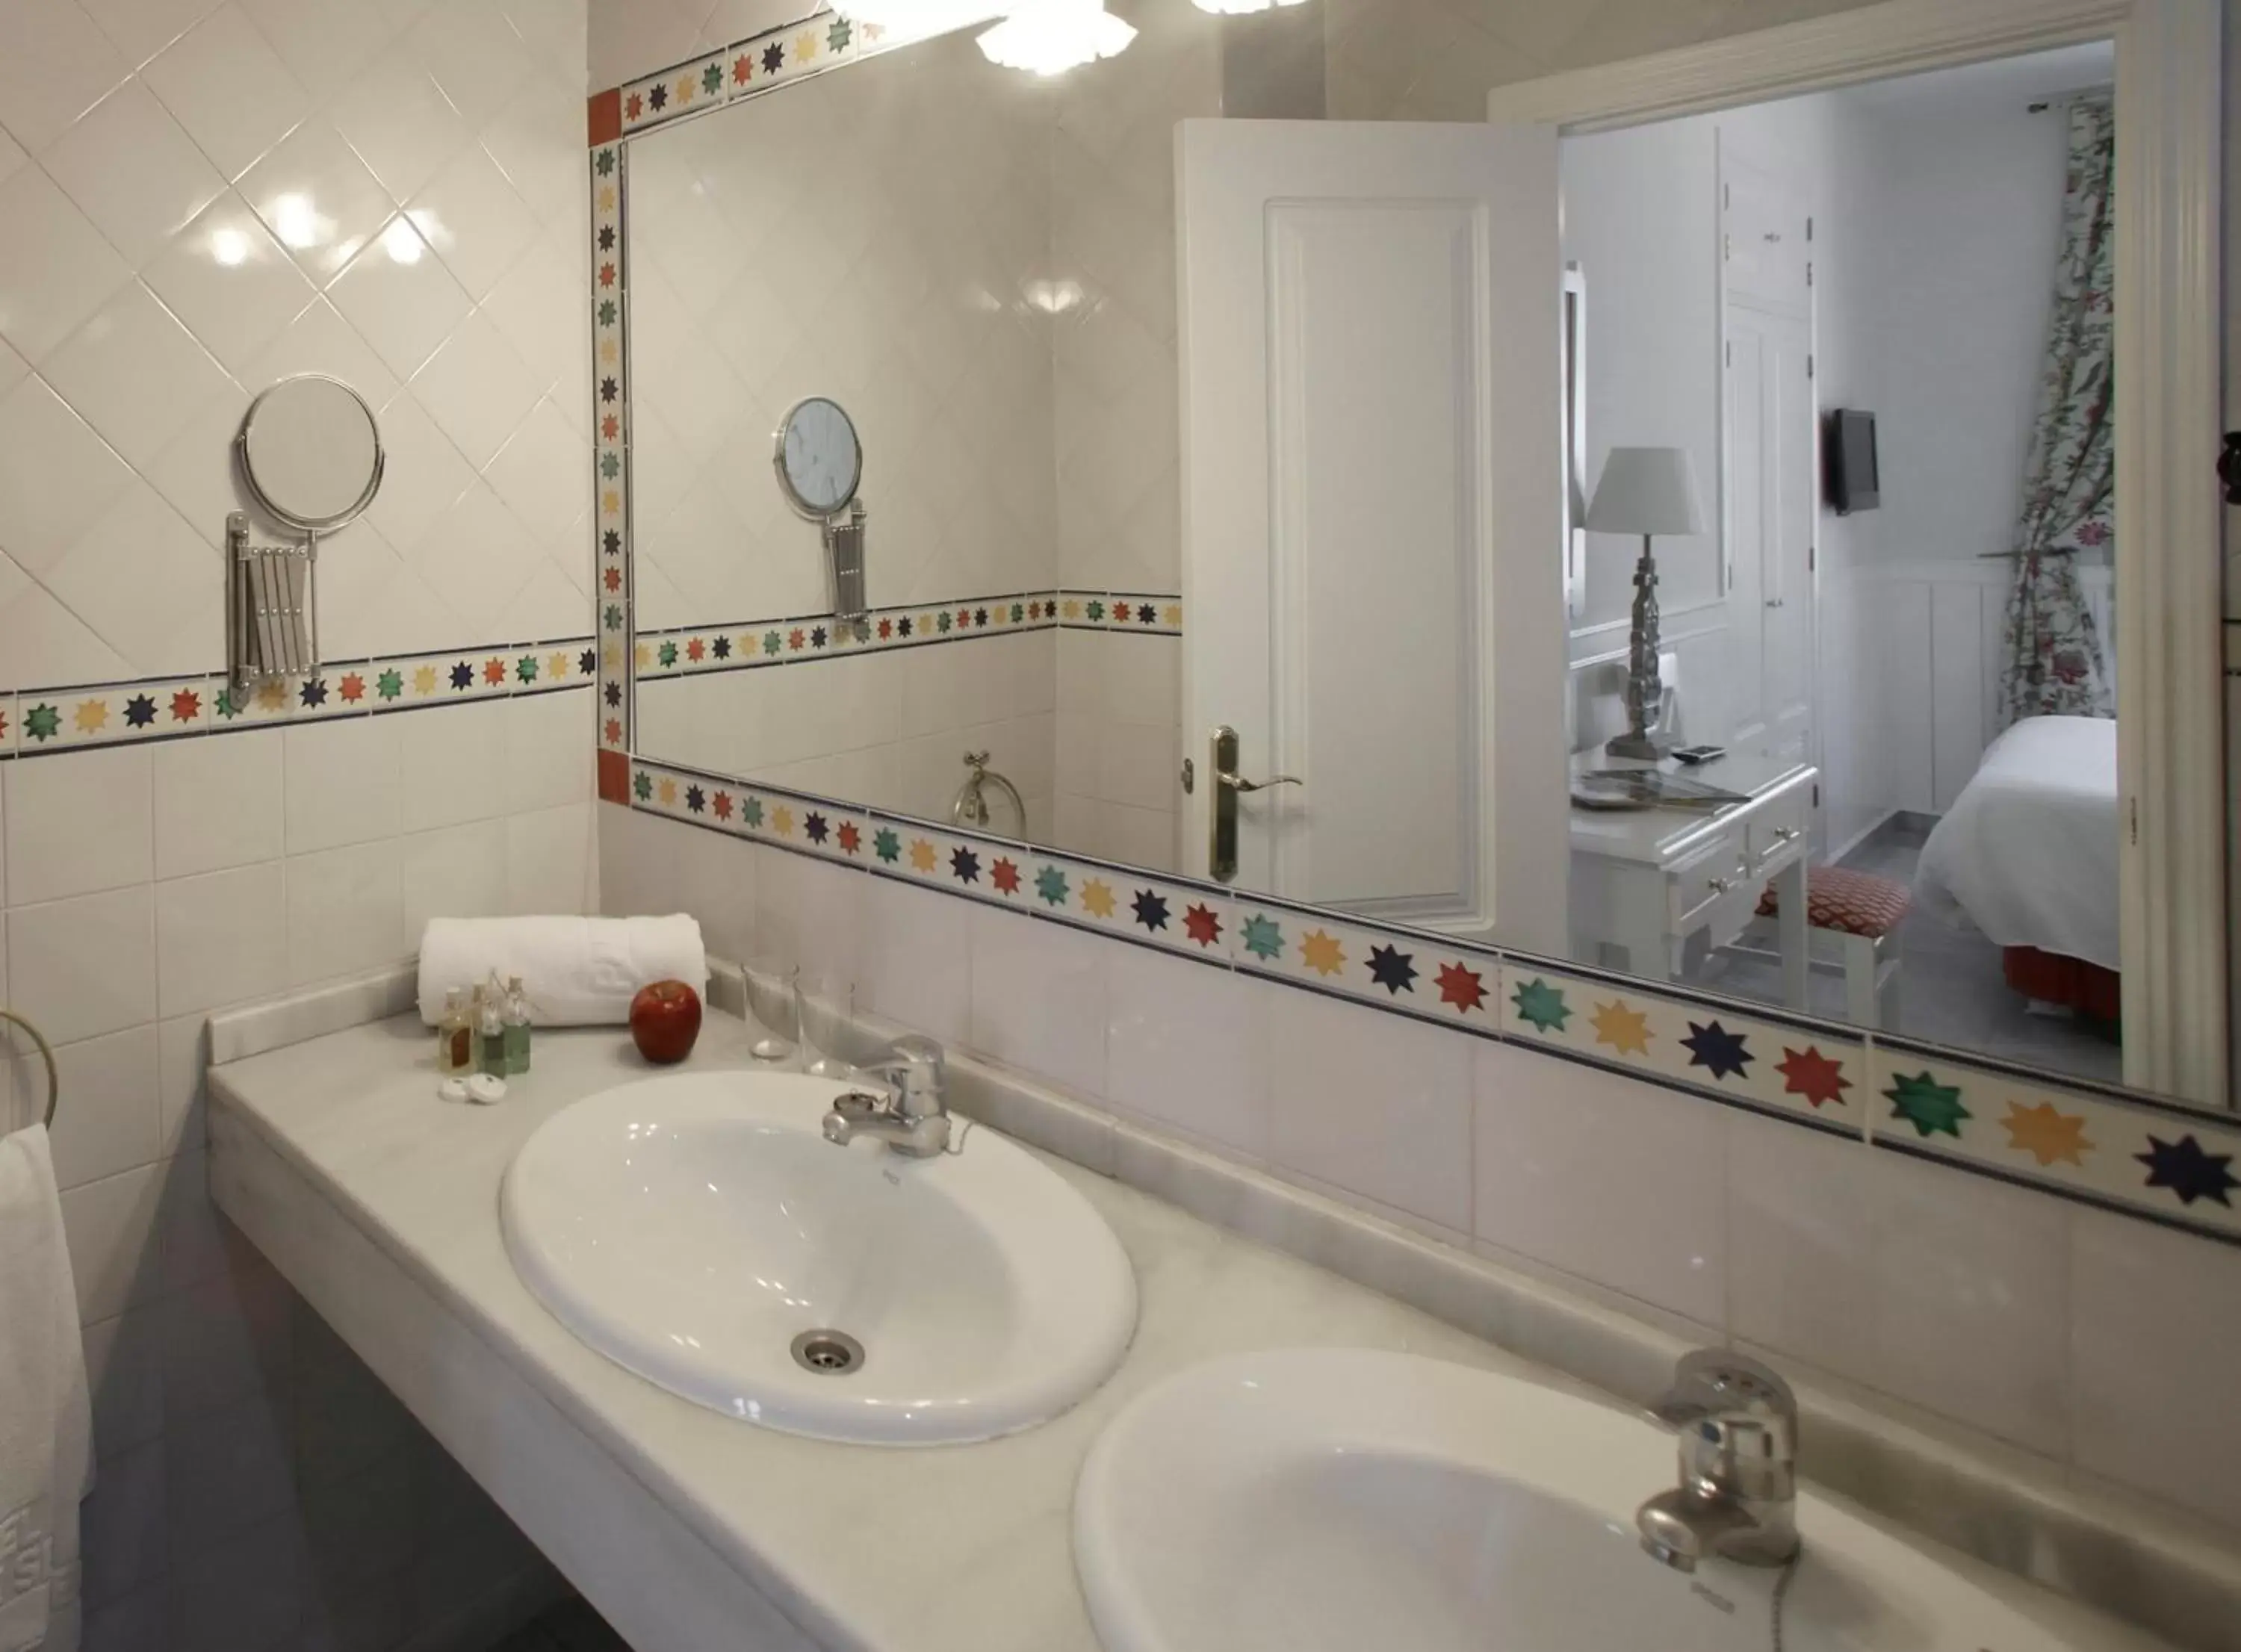 Bathroom in Basic Hotel Puerta de Sevilla